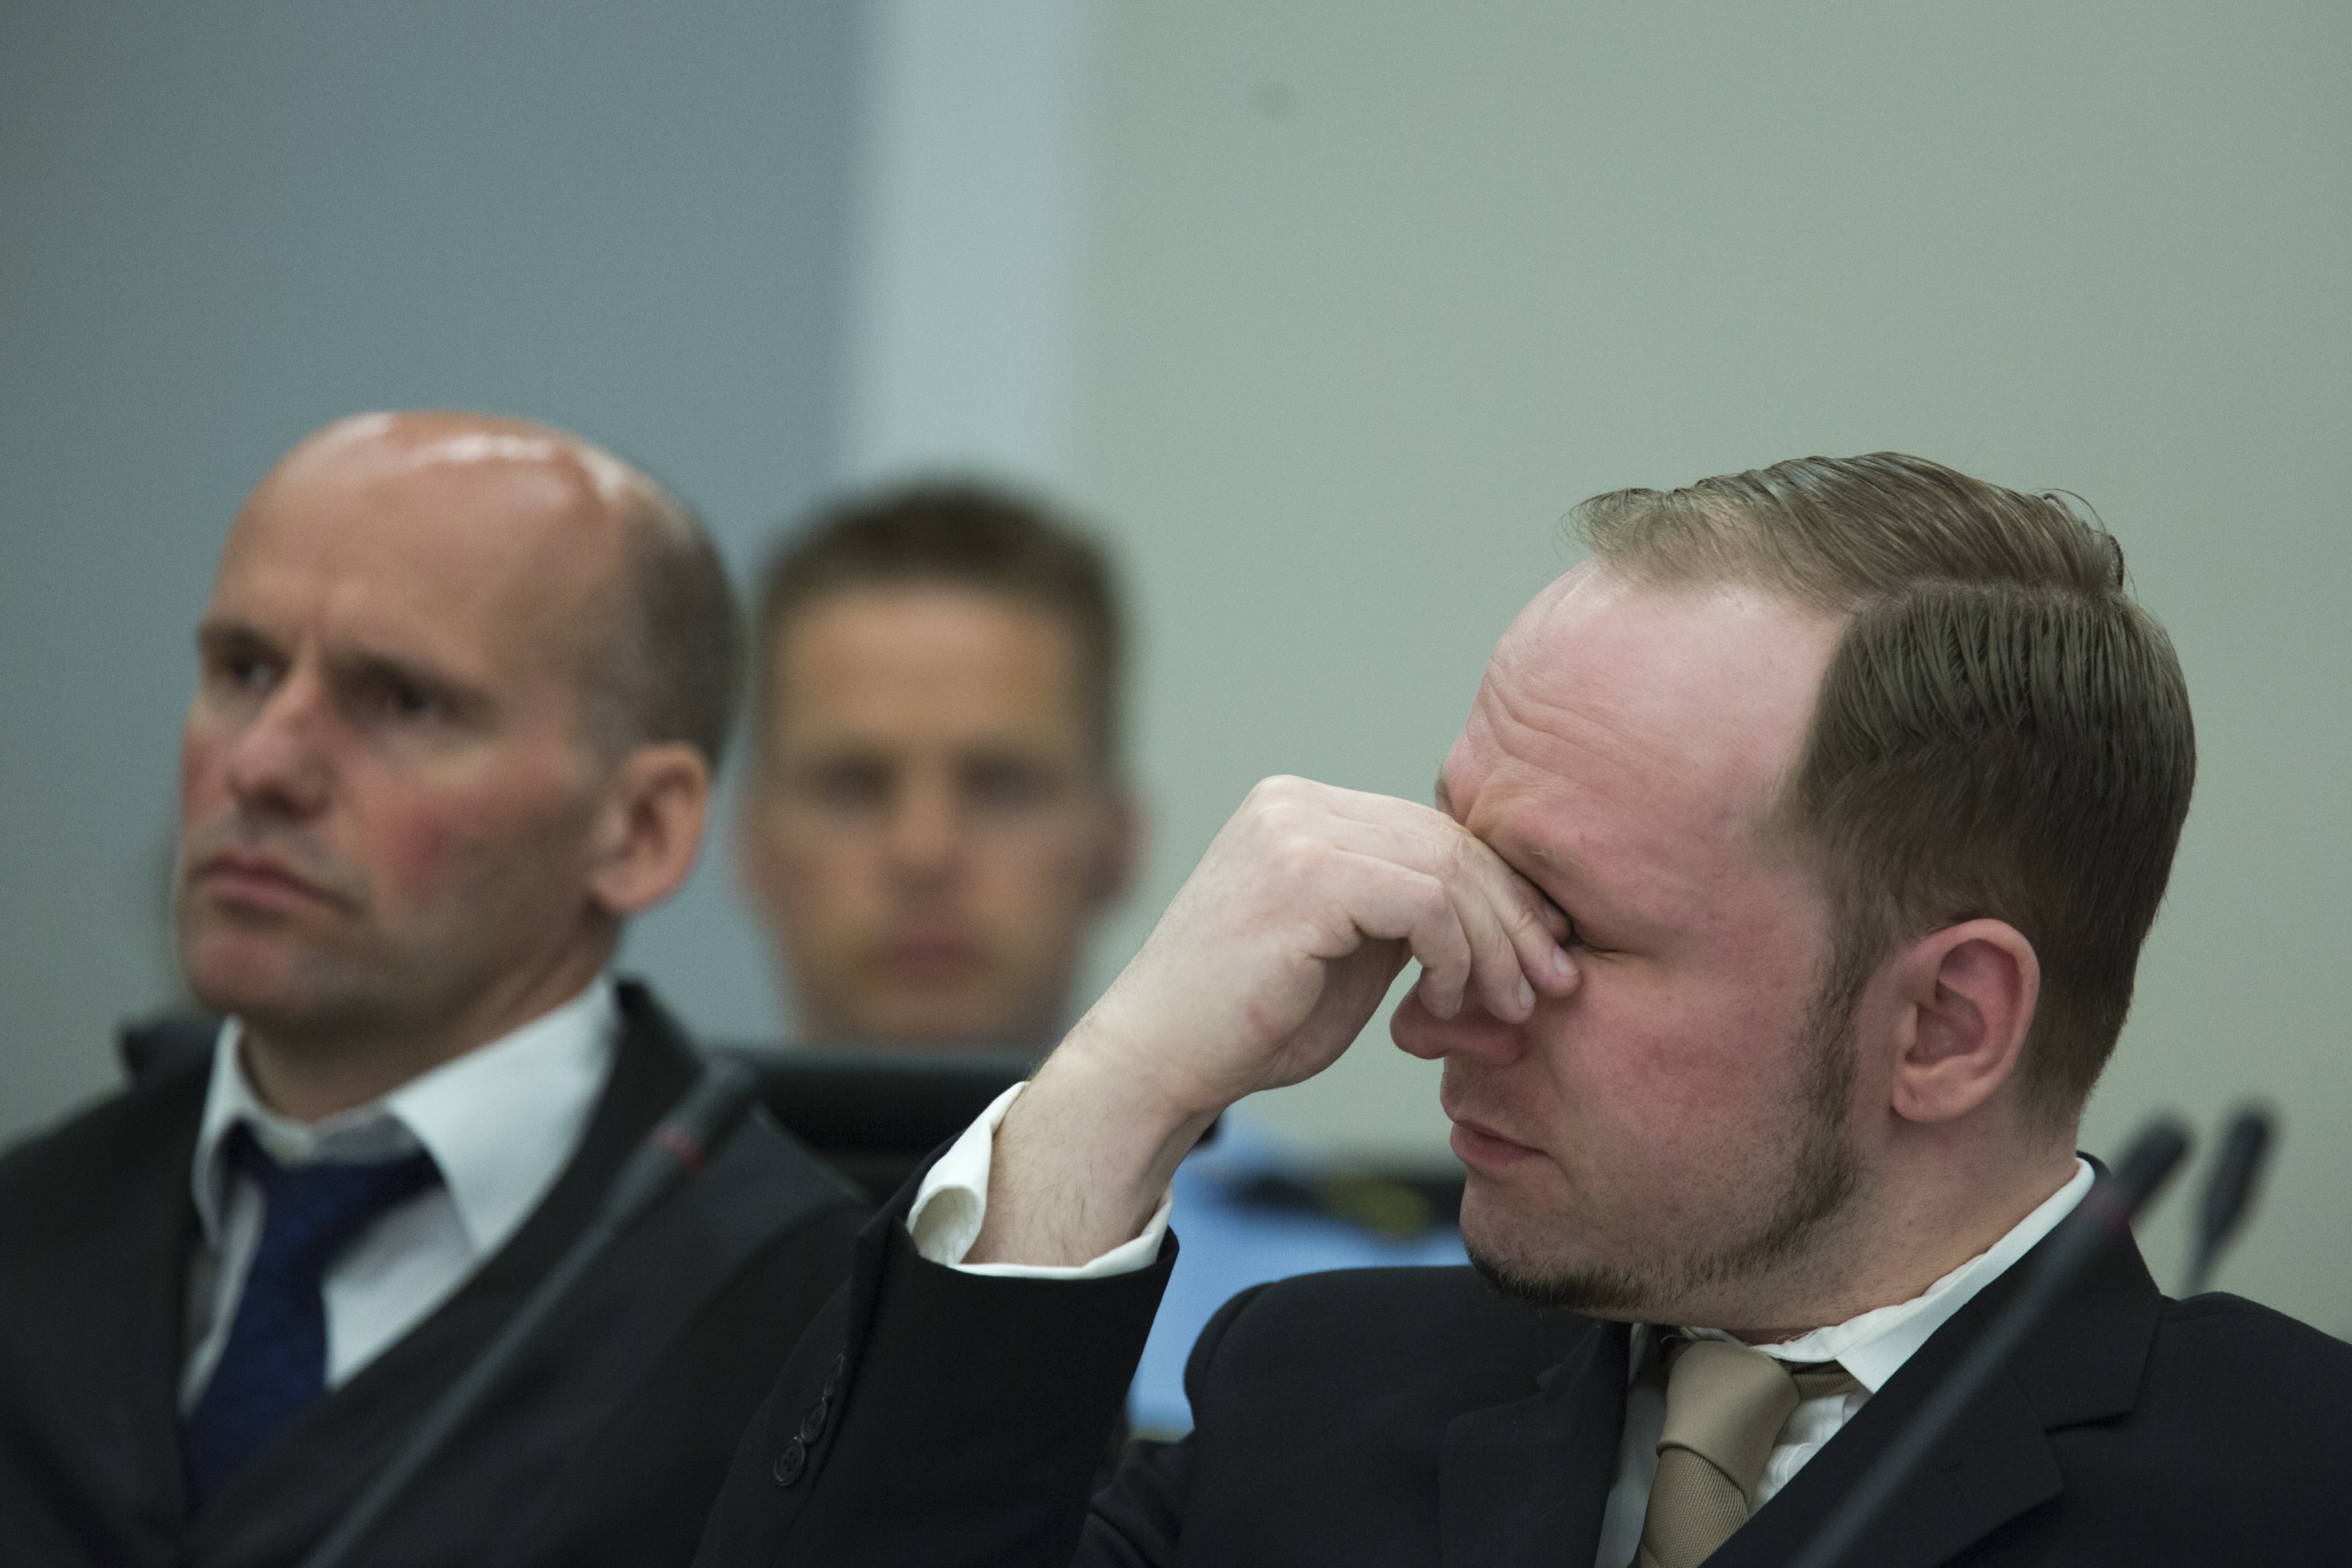 Men Breiviks fasad brast i måndags då han när hans propagandafilm visas i rättssalen.